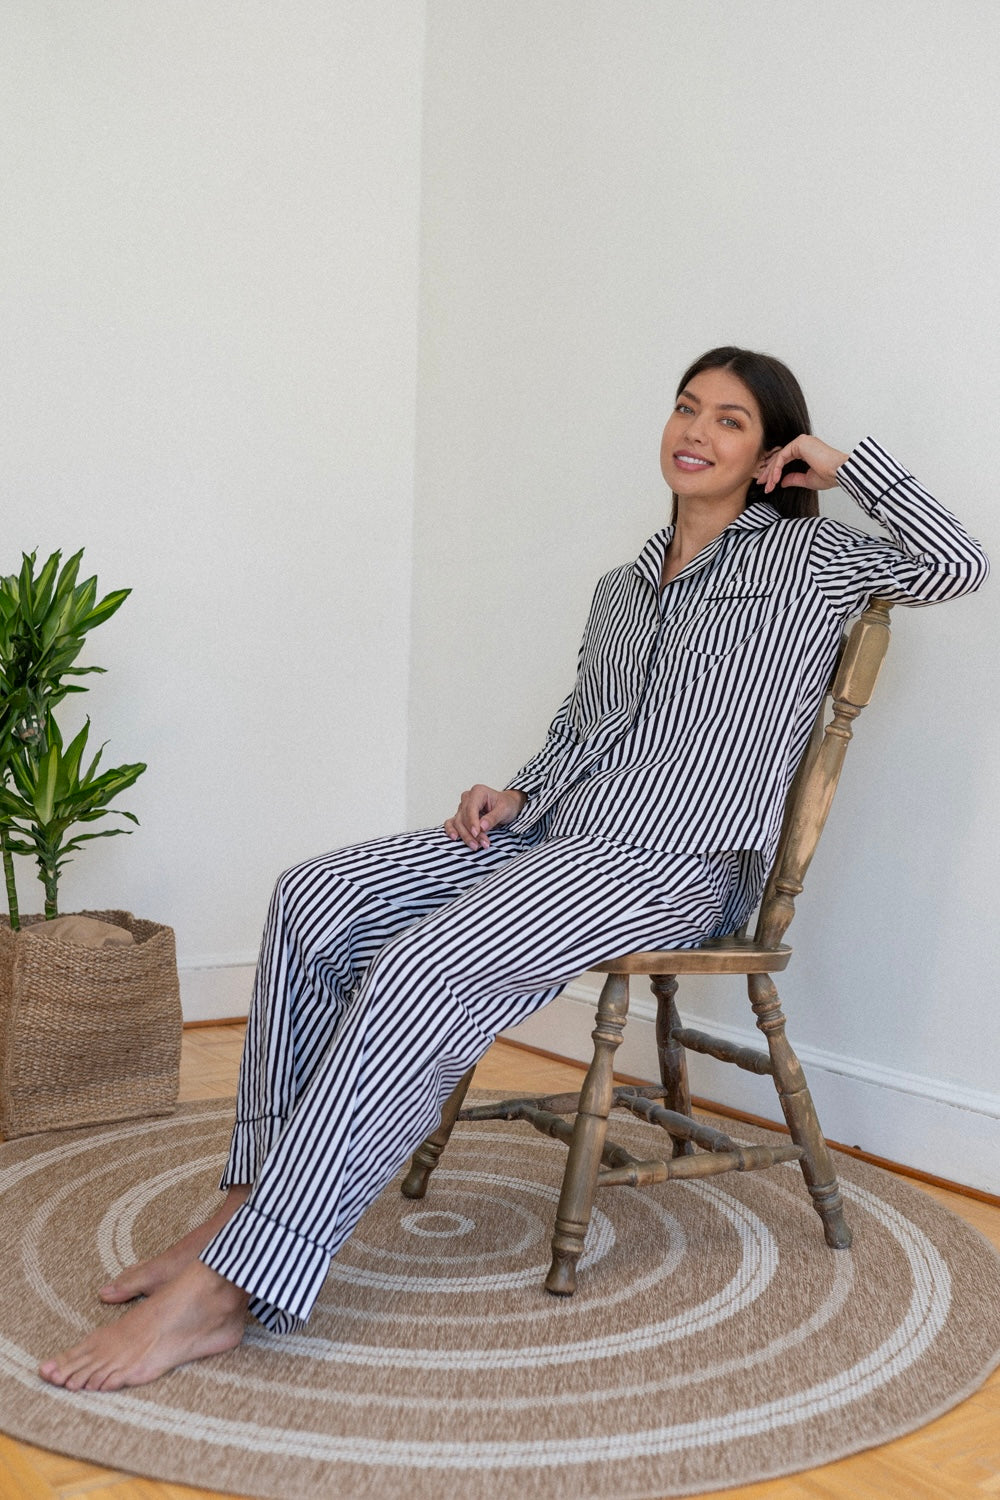 Zee Zee| Long Sleeve Pajama set